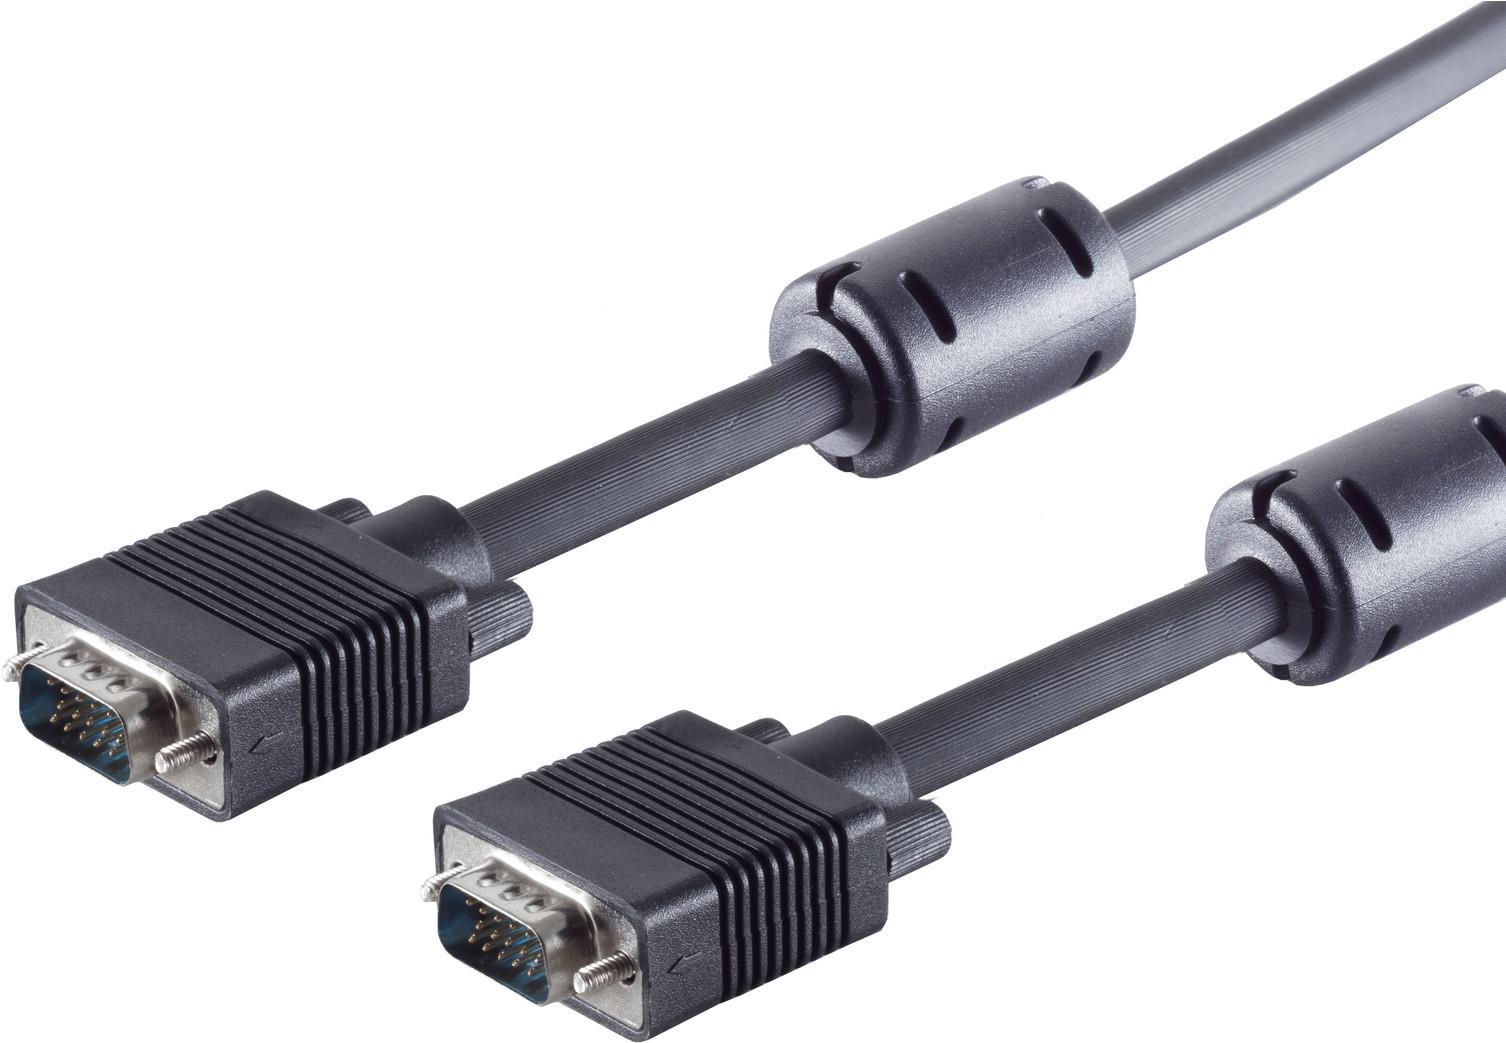 S/CONN maximum connectivity S-VGA-Monitorkabel, 2 x 15-pol. HDD-Stecker, geschirmt, 75 Ohm, mit vergossenen Gehäusen, schwarz, 0,2m (78056-0.2)